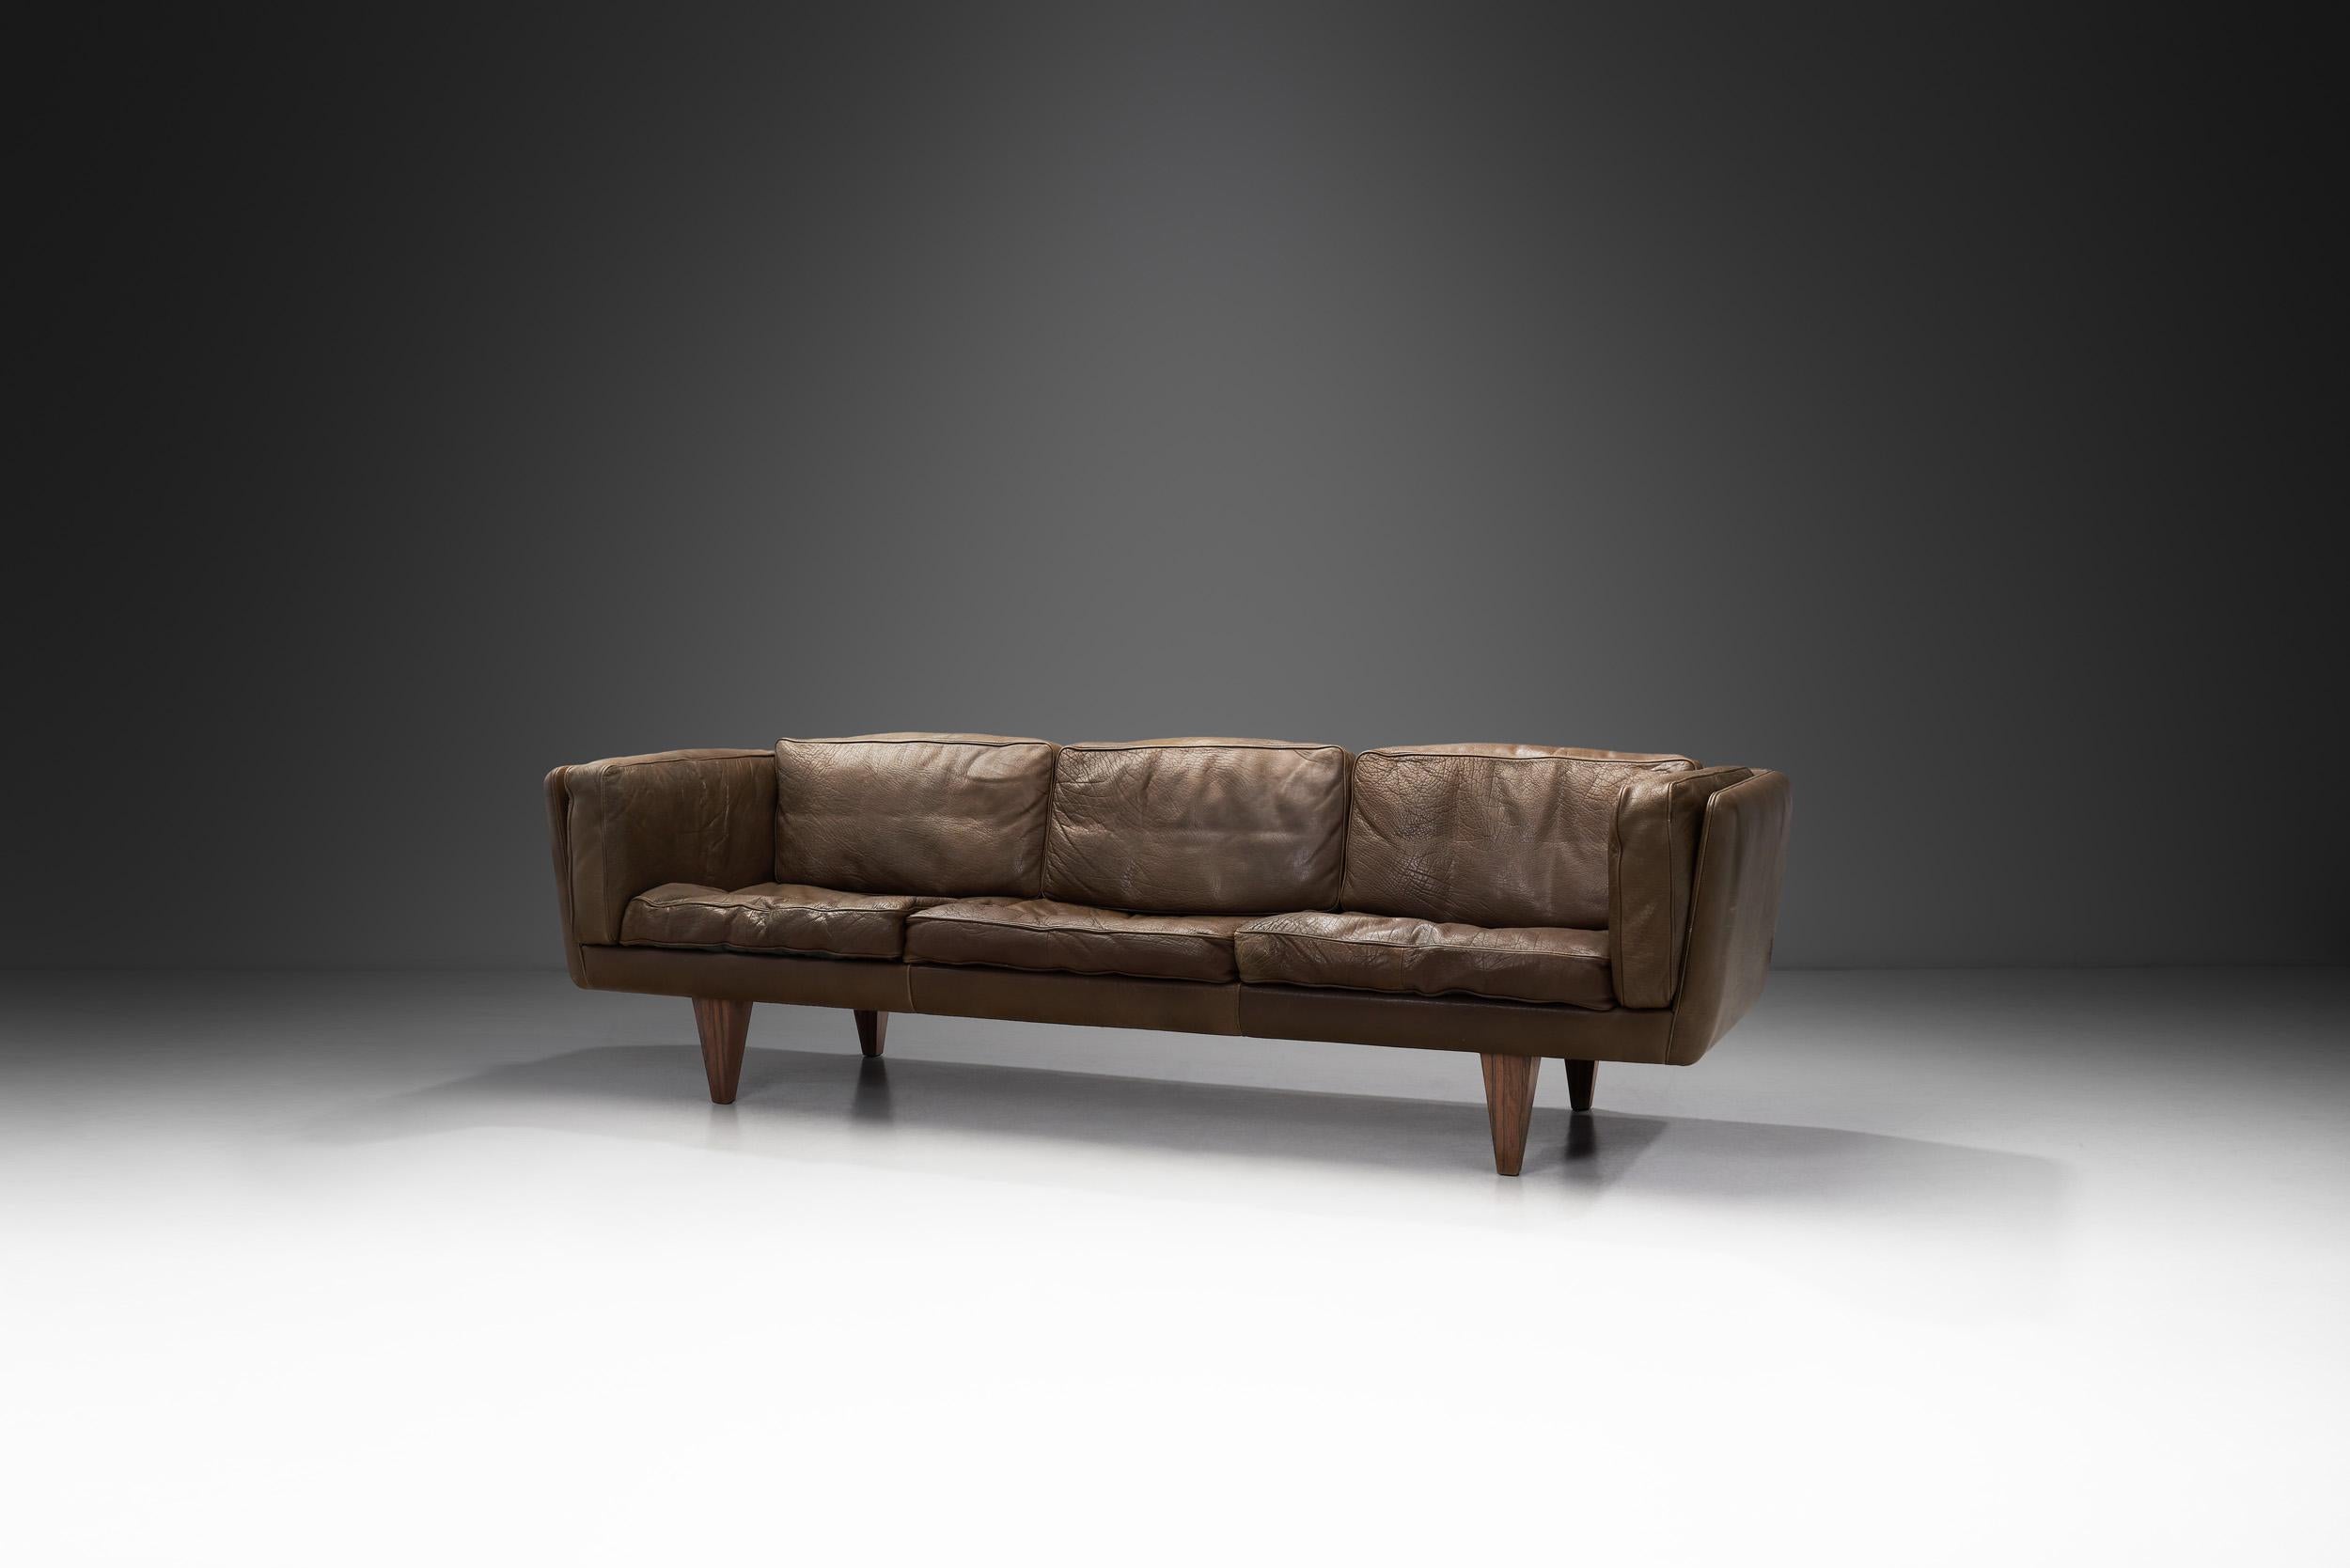 Dieses freistehende Sofa, besser bekannt unter dem Namen 